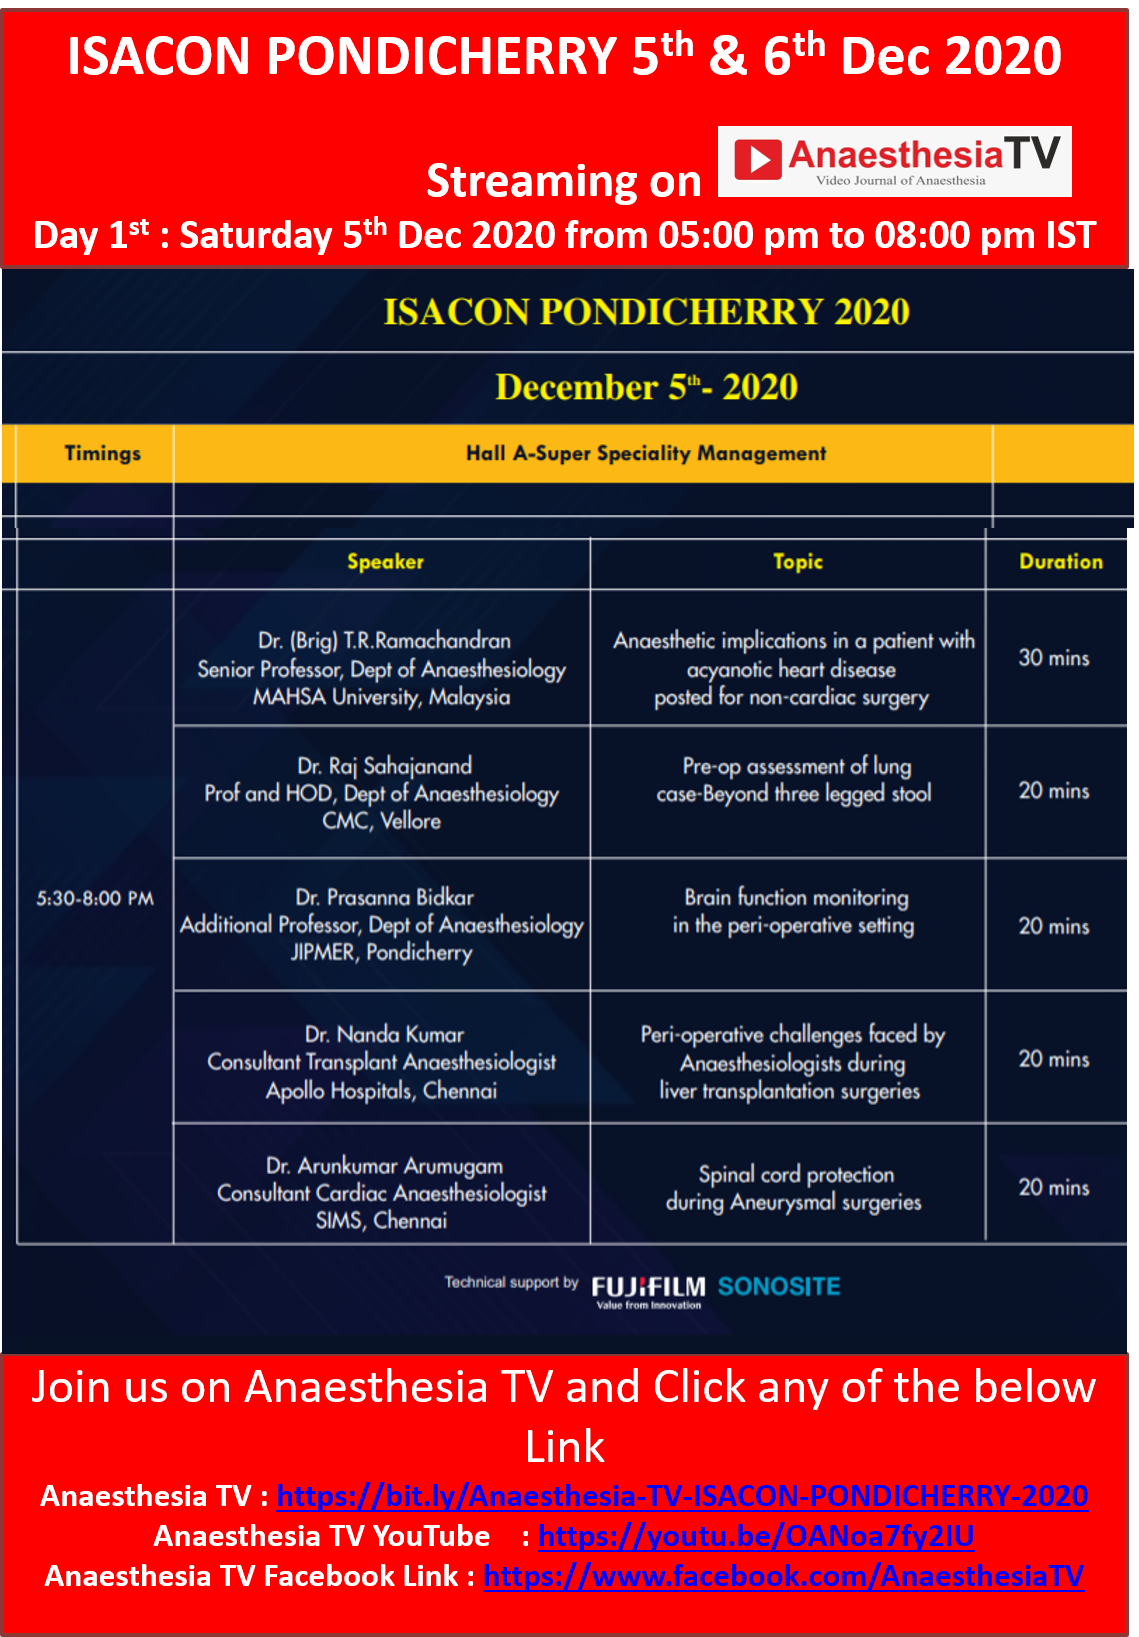 ISACON PONDICHERRY 2020 : 5th & 6th Dec 2020